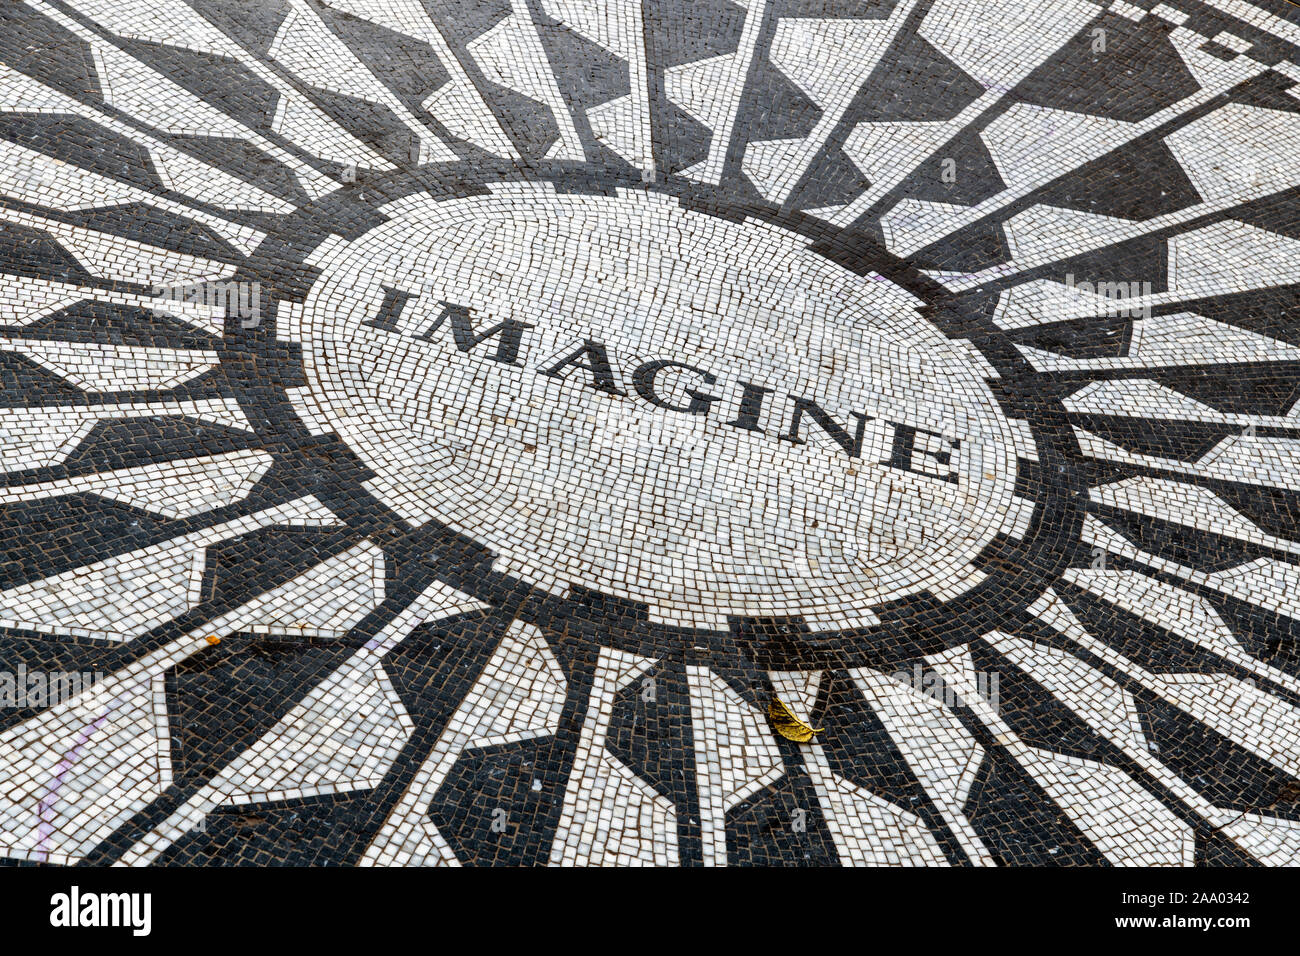 Imaginer la voie circulaire, mosaïque de Strawberry Fields memorial, Central Park, Manhattan, New York, USA Banque D'Images